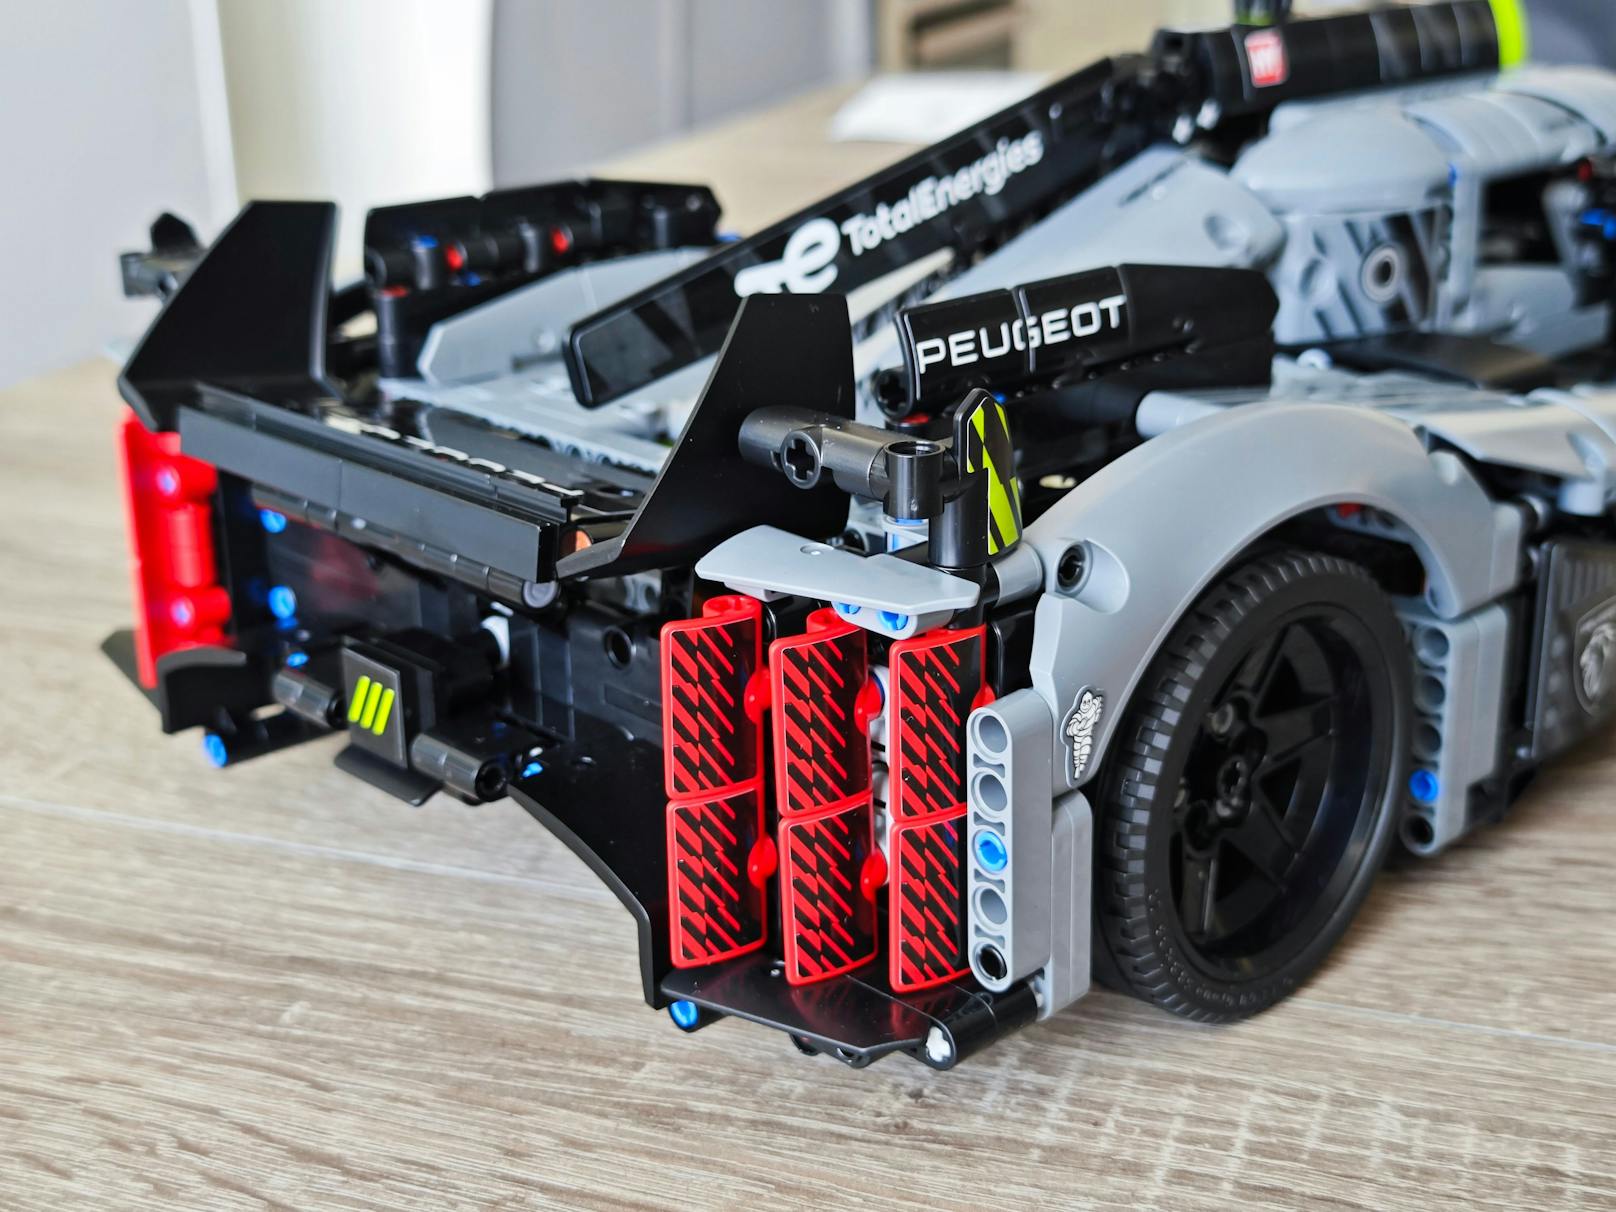 ... Sticker-Logos und -Schriftzügen sowie Schwarz und einigen hellgrünen Details dominiert. Das LEGO Peugeot Hypercar zeigt sich im Test als echtes Kult-Auto ...